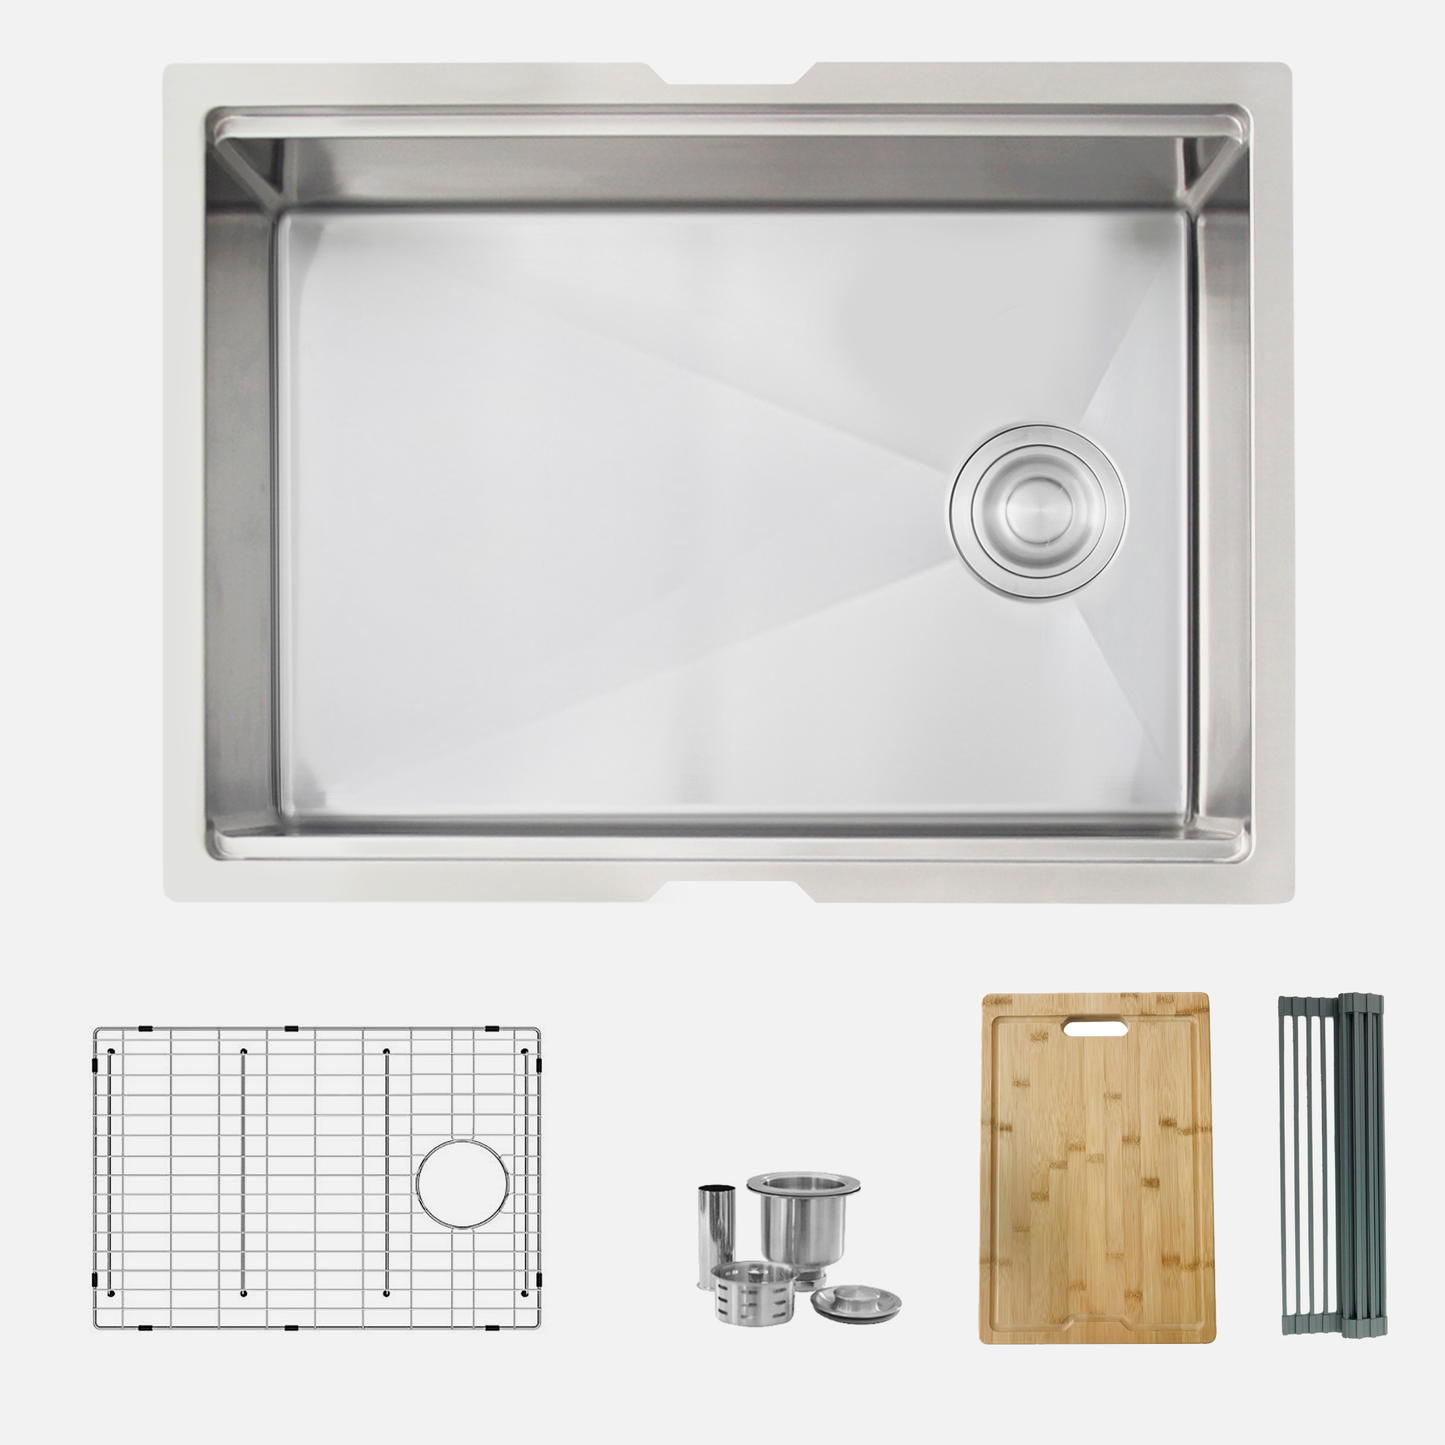 STYLISH 25" Versa Workstation Single Bowl Undermount 16 Gauge Stainless Steel Kitchen Sink with Built in Accessories